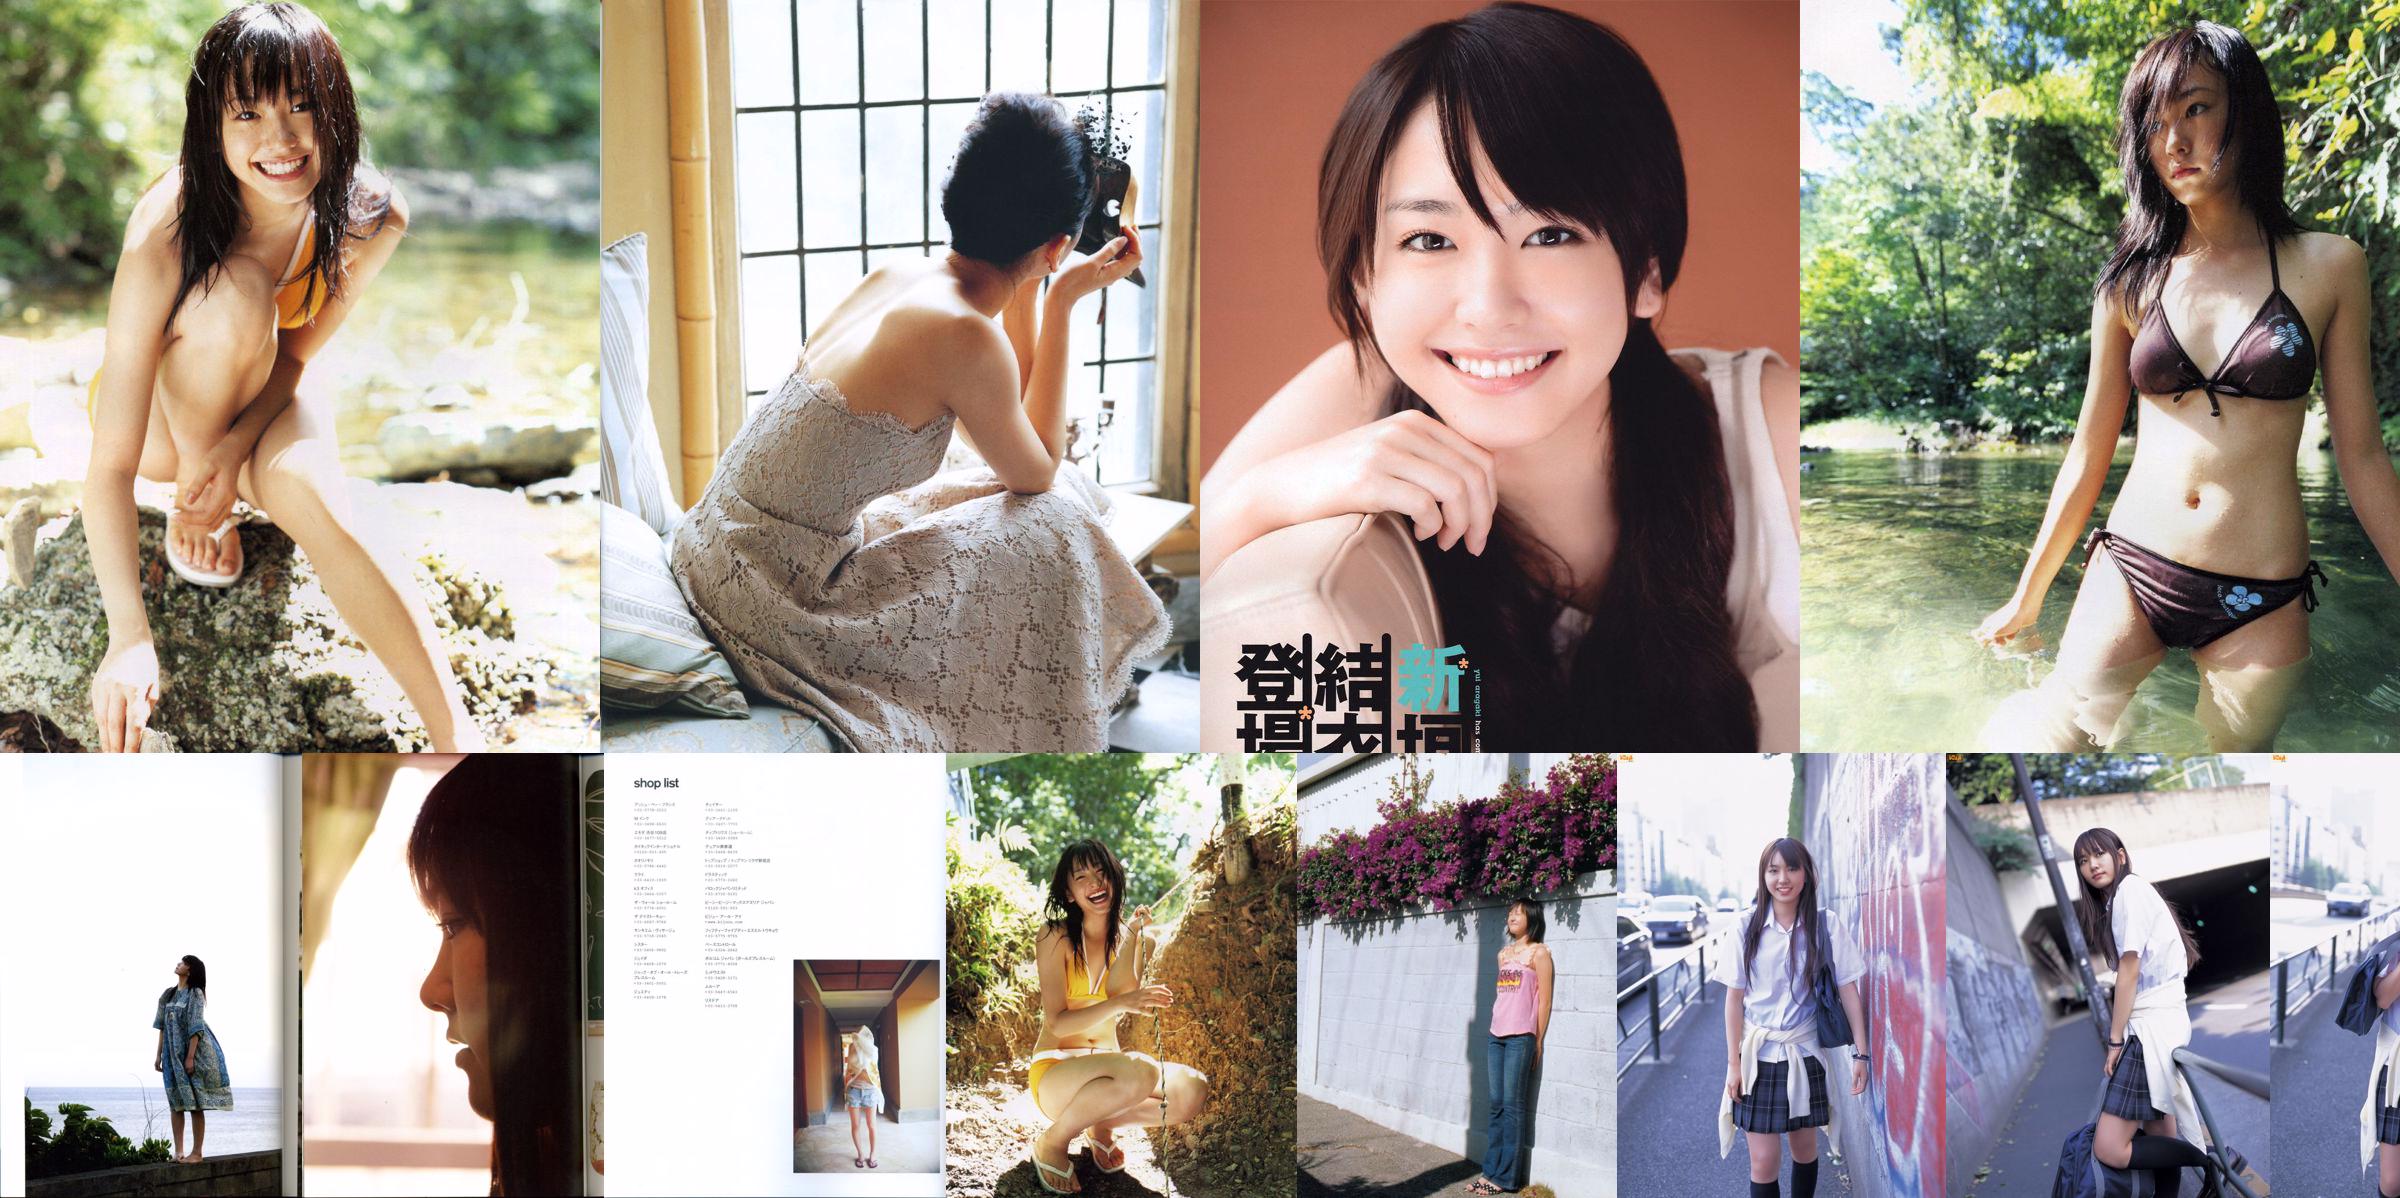 Yui Aragaki "Tạp chí ảnh thời trang 2012" No.a3698b Trang 51